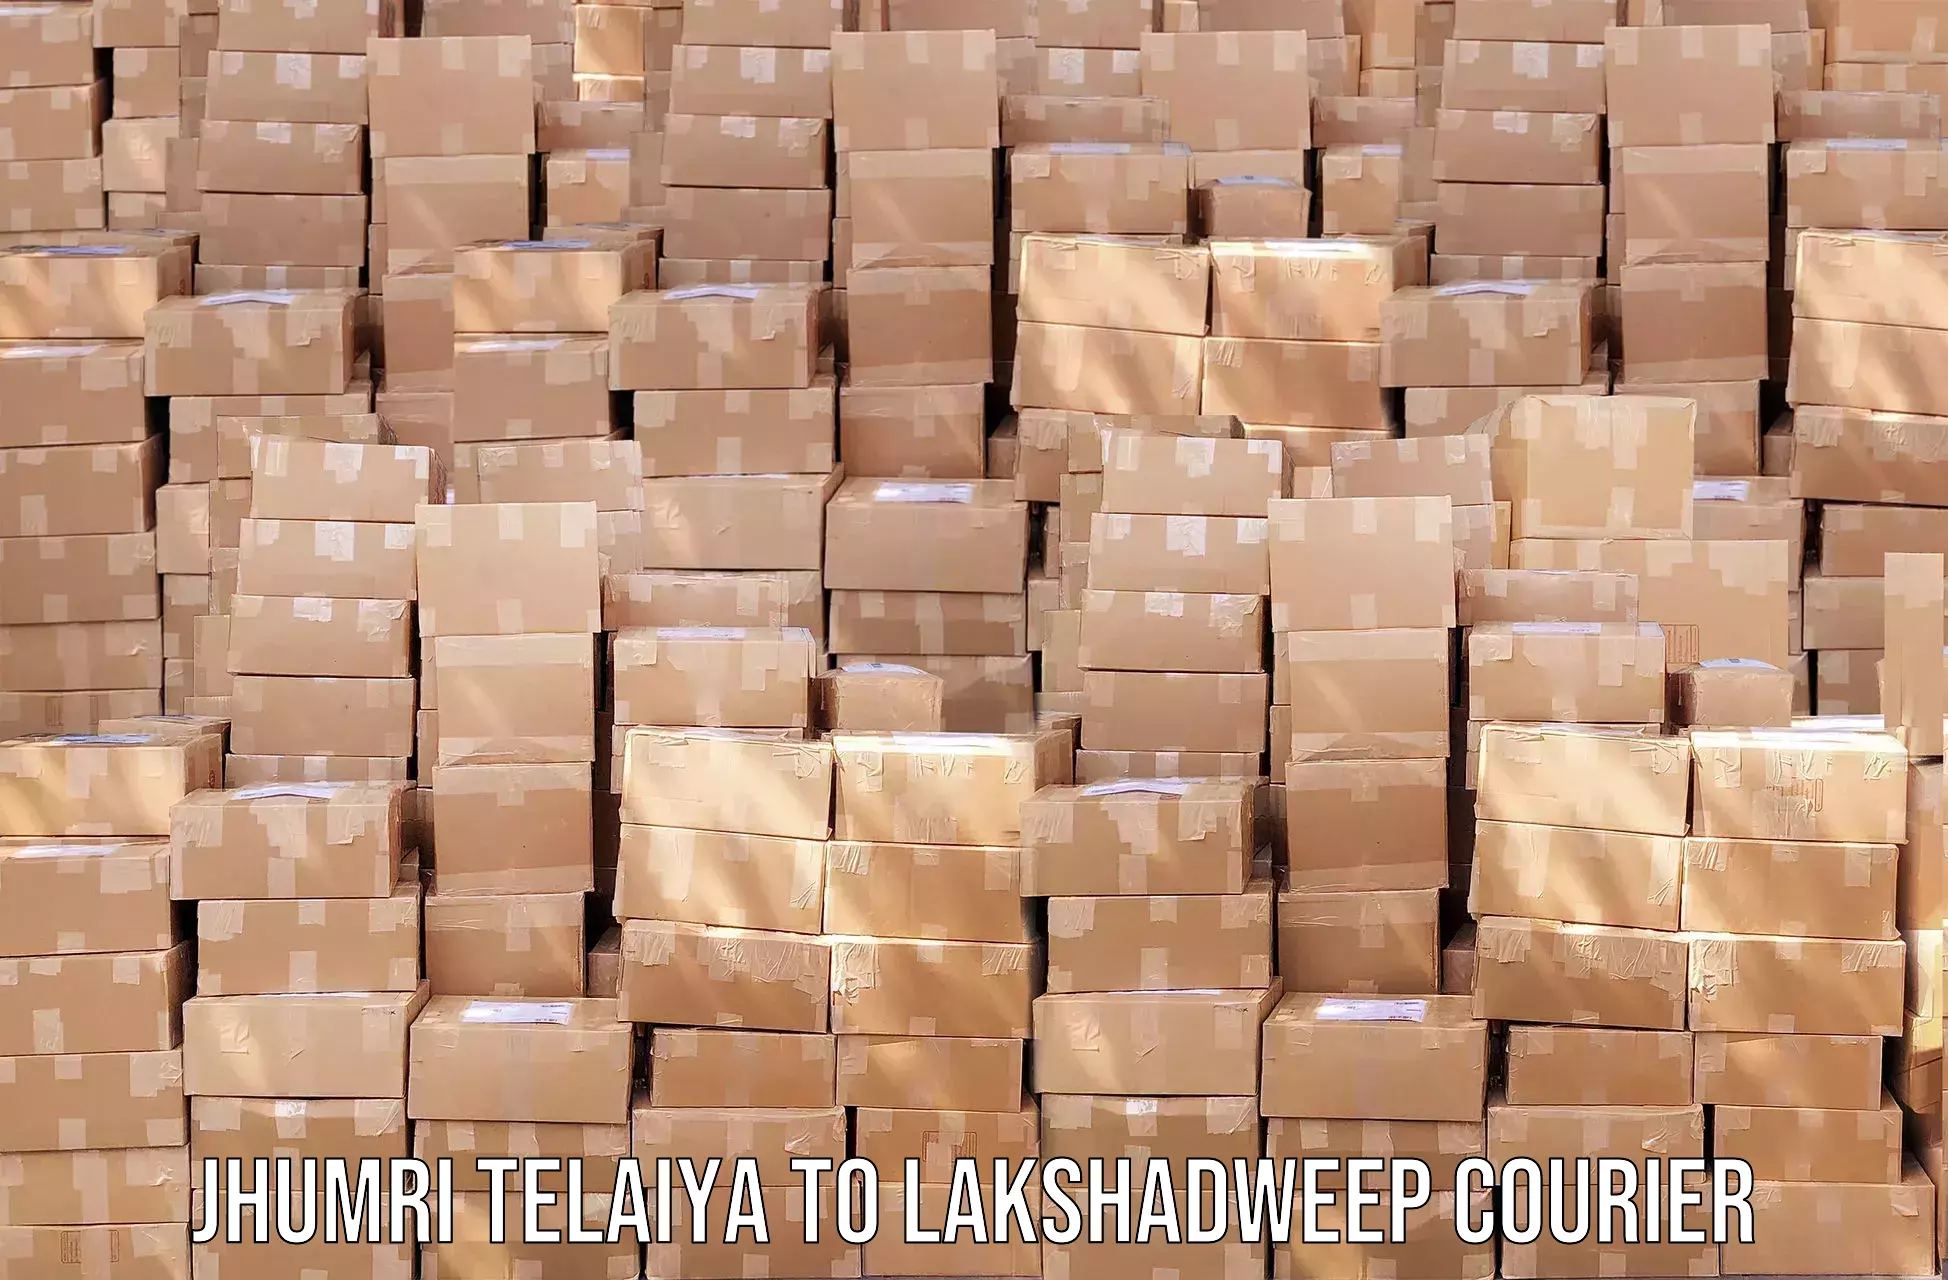 Subscription-based courier Jhumri Telaiya to Lakshadweep